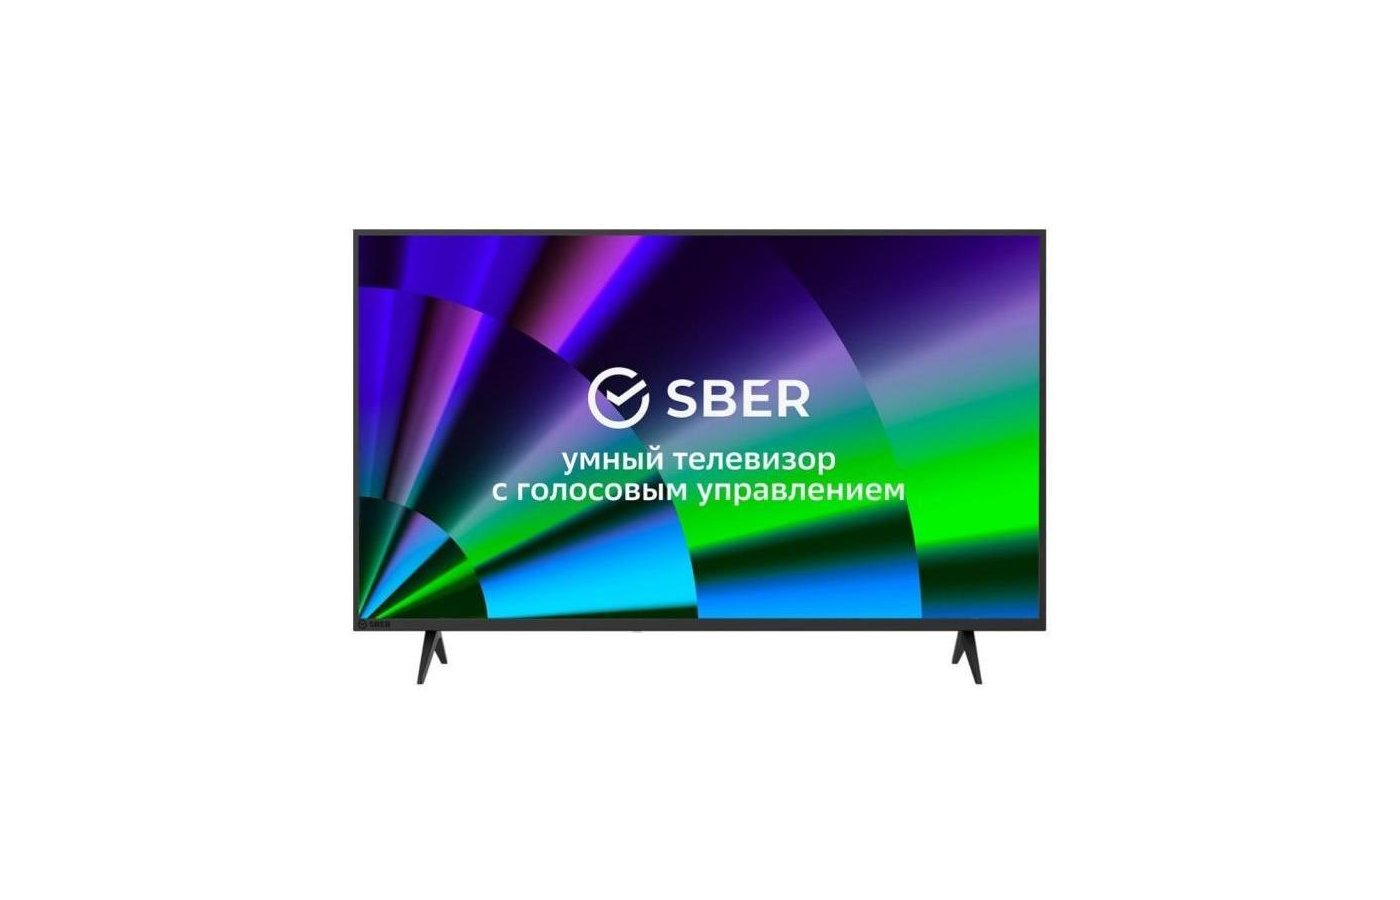 Телевизор сбер отзывы цена. Телевизор sber SBX-43u219tss. Телевизор sber sdx-65u4014b отзывы.